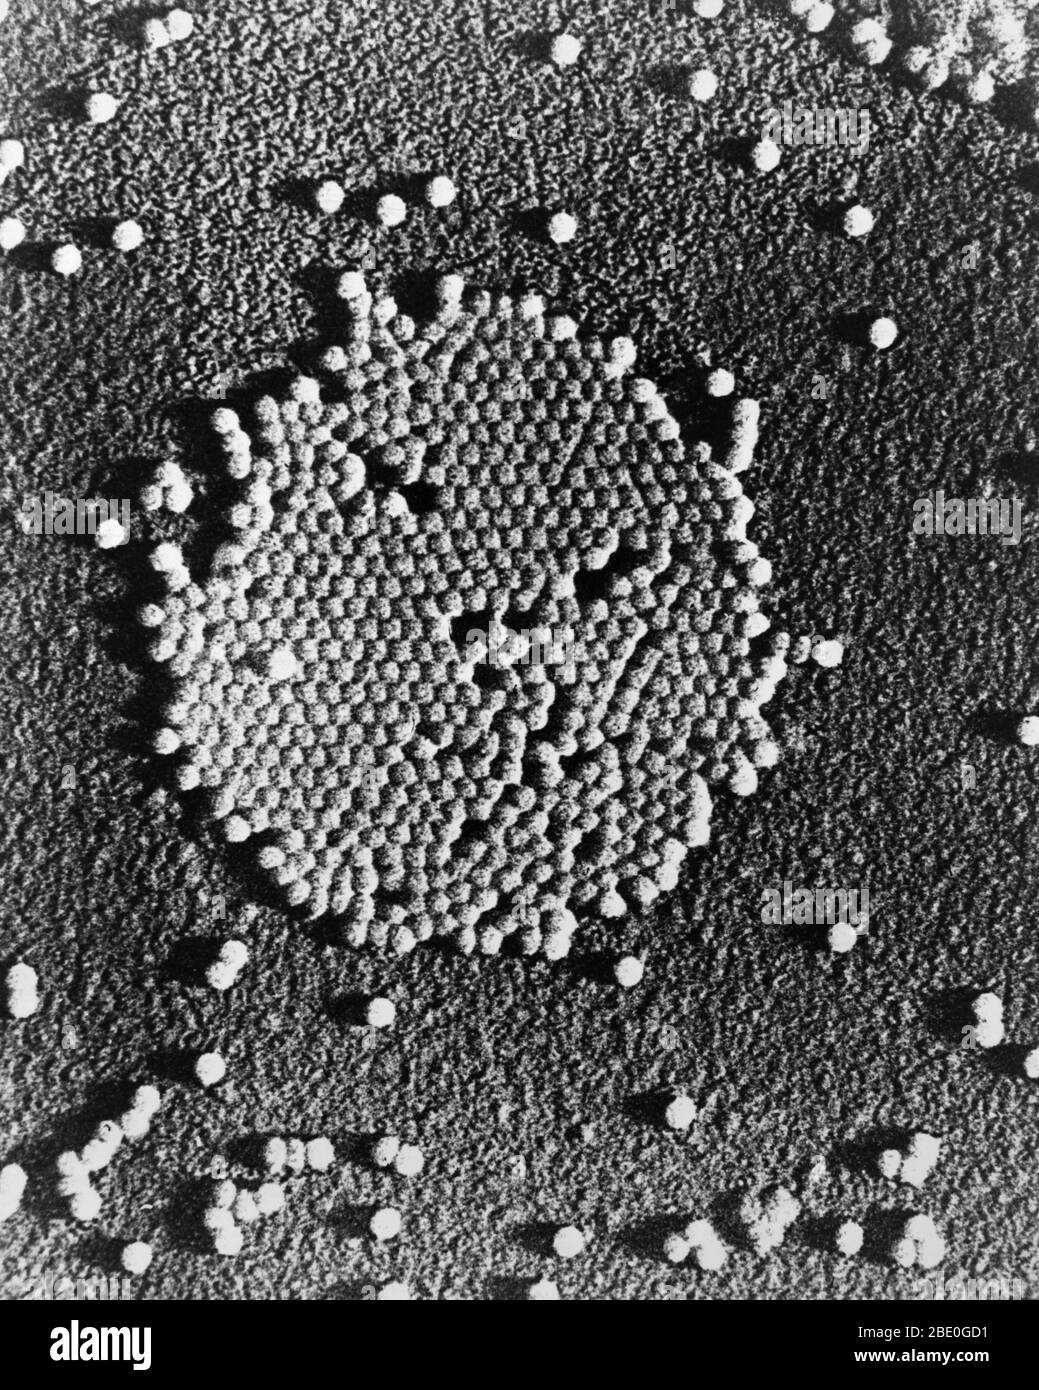 Transmission Electron Micrograph (TEM) des Poliovirus. Poliovirus, der Erreger der Poliomyelitis (auch Polio genannt), ist ein menschliches Enterovirus und Mitglied der Familie der Picornaviridae. Poliovirus besteht aus einem RNA-Genom und einem Protein-Capsid. Poliovirus ist ein positiv-gestrandetes RNA-Virus. Poliovirus ist strukturell ähnlich zu anderen menschlichen Enteroviren (Coxsackievirus, Echoviren und Rhinoviren), die auch immunoglovulinähnliche Moleküle verwenden, um Wirtszellen zu erkennen und in sie einzudringen. Das Poliovirus wurde 1909 von Karl Landsteiner und Erwin Popper isoliert. Im Jahr 1981 wurde das Poliovirus g Stockfoto